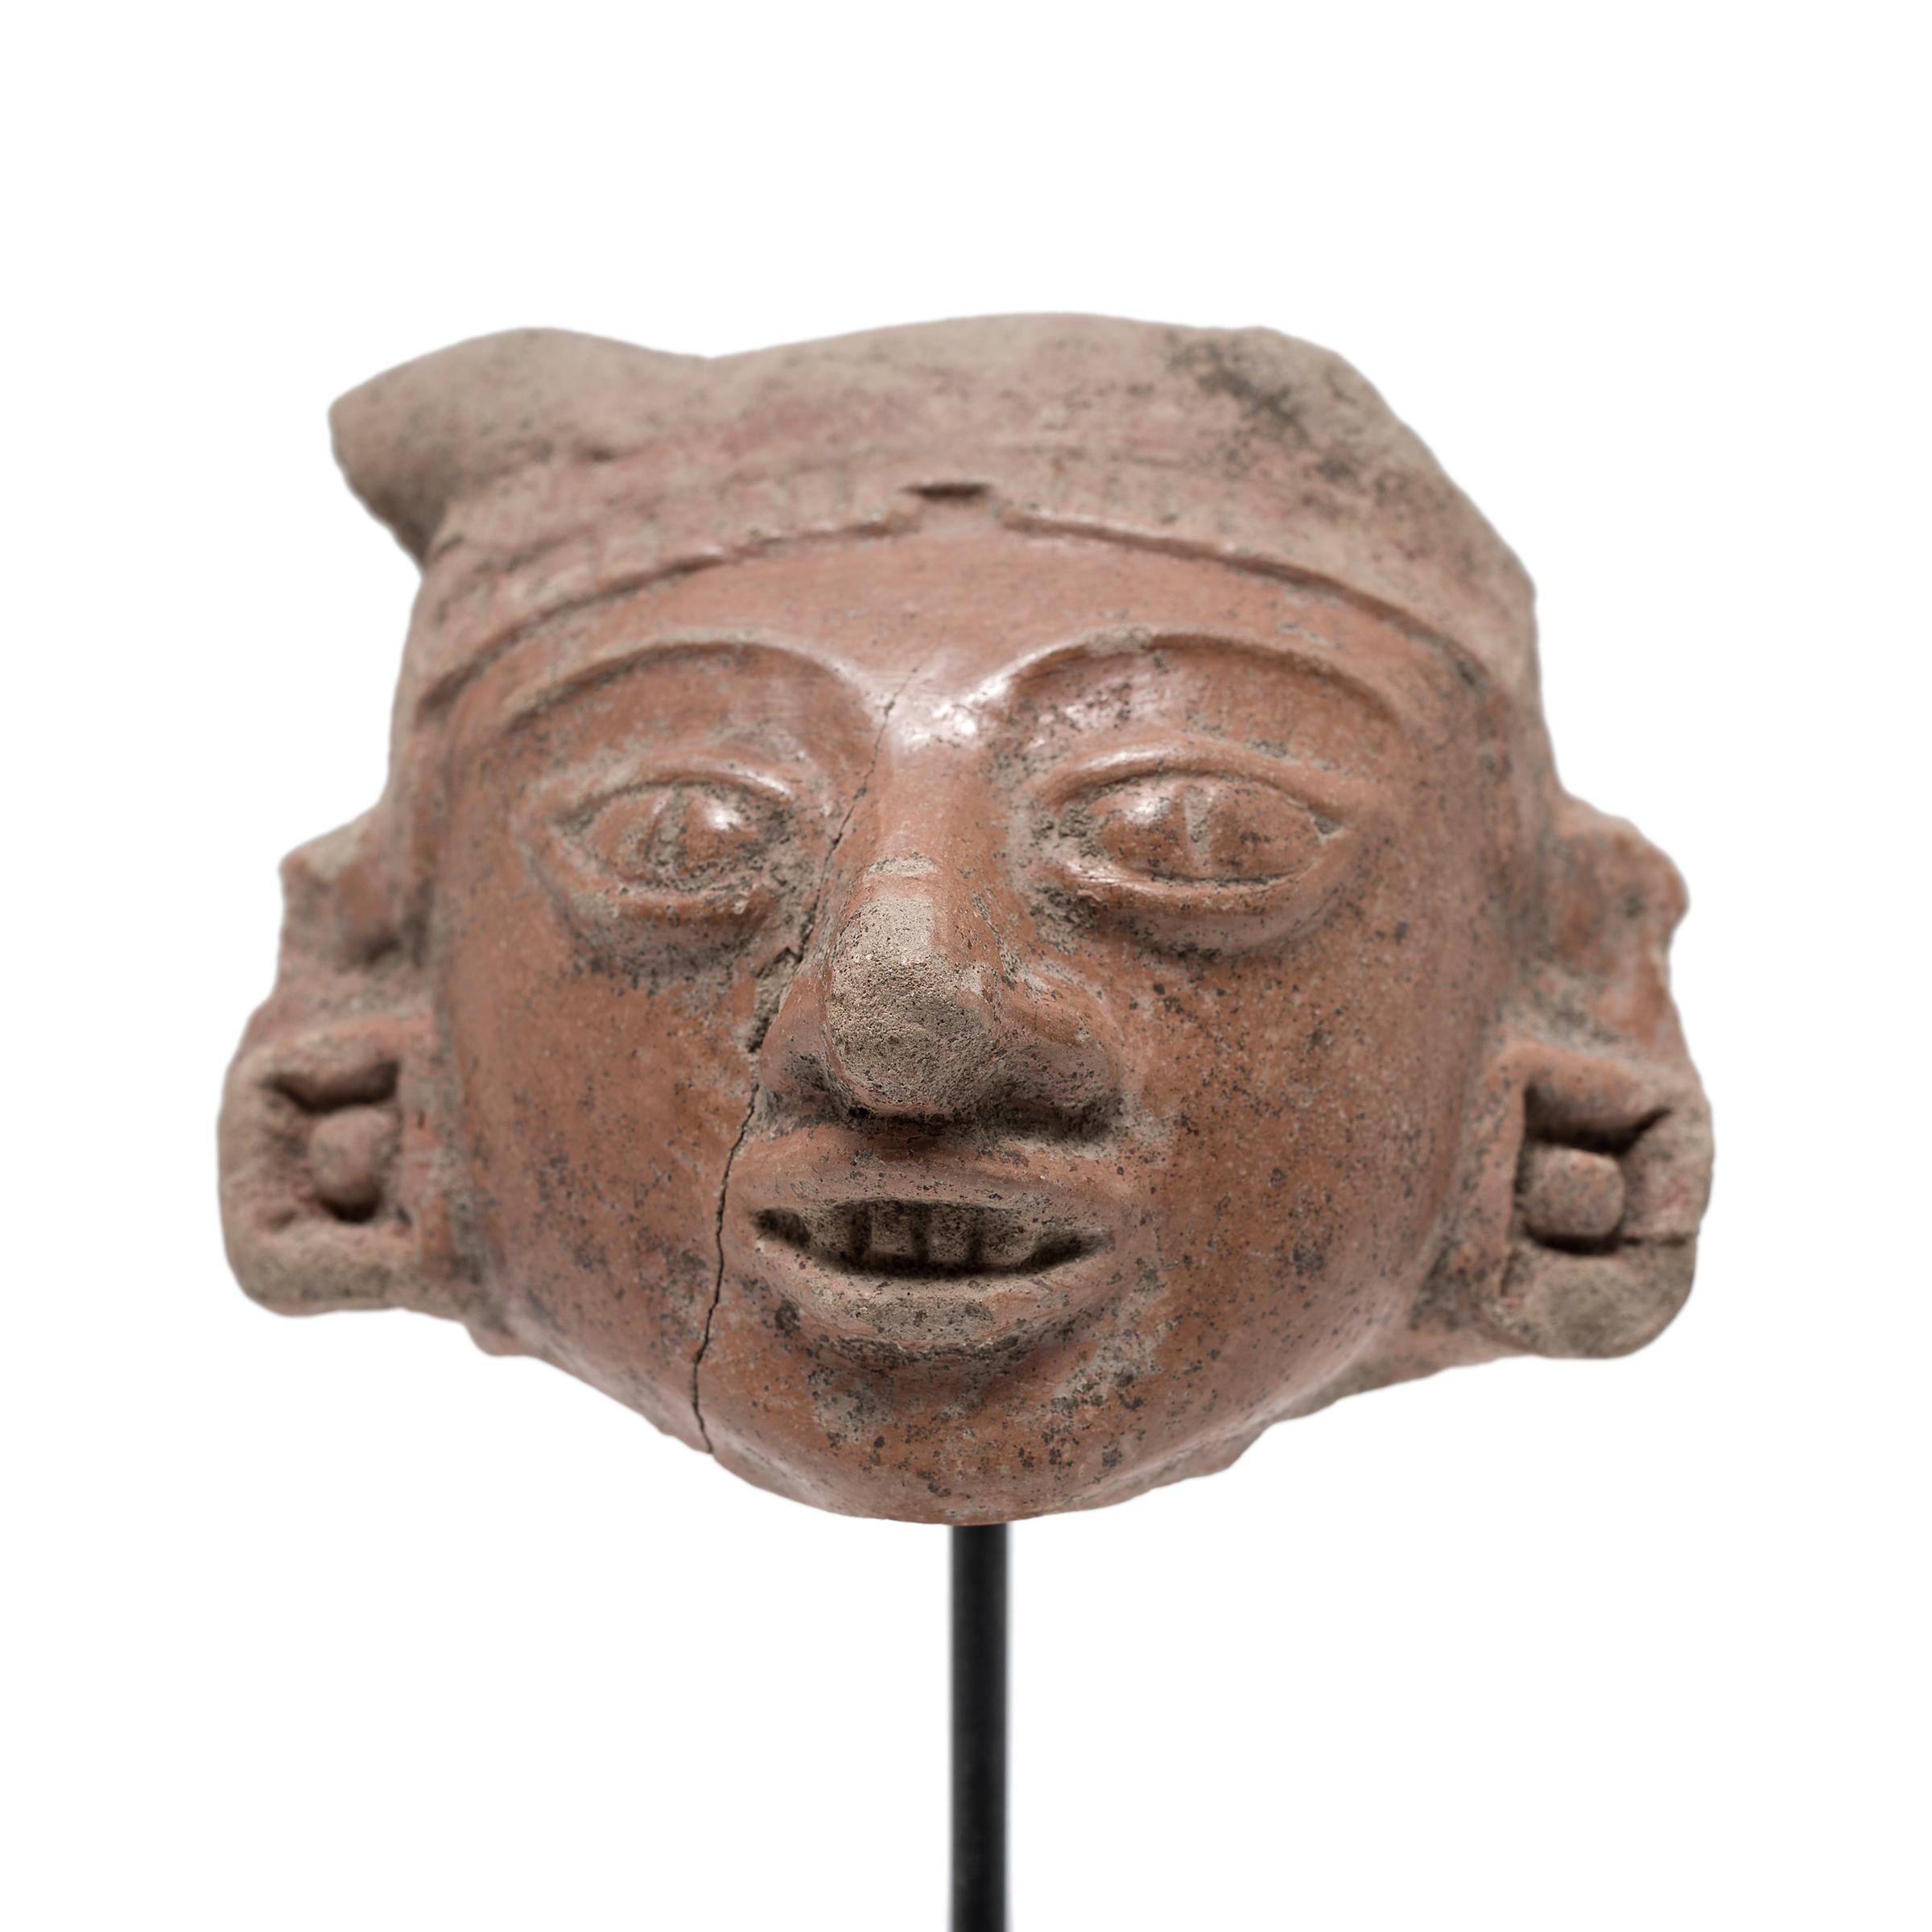 Dieses interessante Kopffragment war einst an einer um 400 n. Chr. gefertigten Büste oder Vollplastik angebracht. Mesoamerika. Steingutfiguren wurden während der gesamten Geschichte Teotihuacans in großer Zahl hergestellt. Nach 250 n. Chr. nahm die